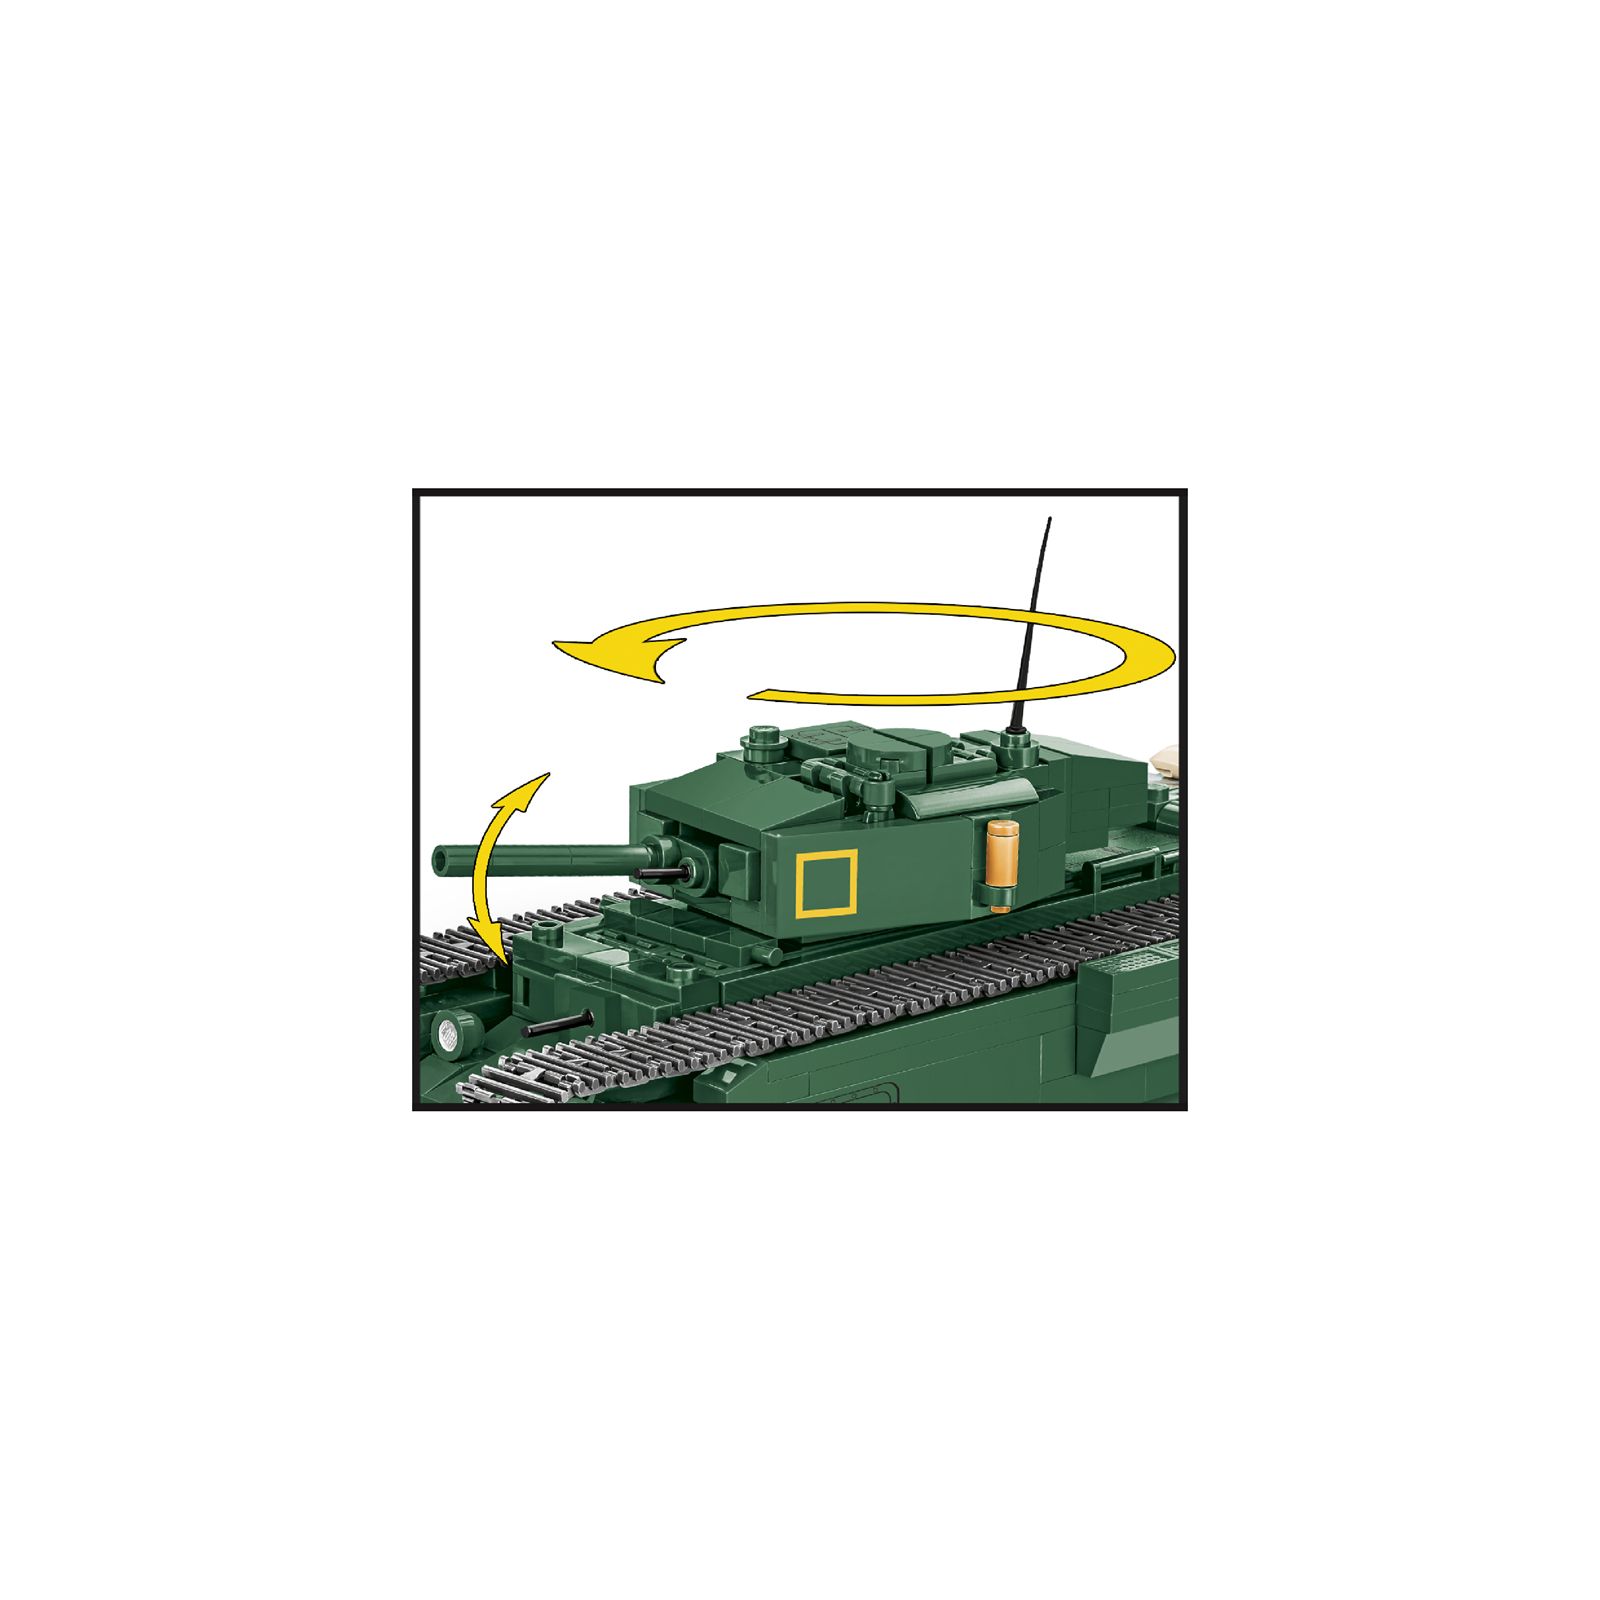 Конструктор Cobi Company of Heroes 3 Танк Mk III Черчилль, 654 деталей (COBI-3046) изображение 5